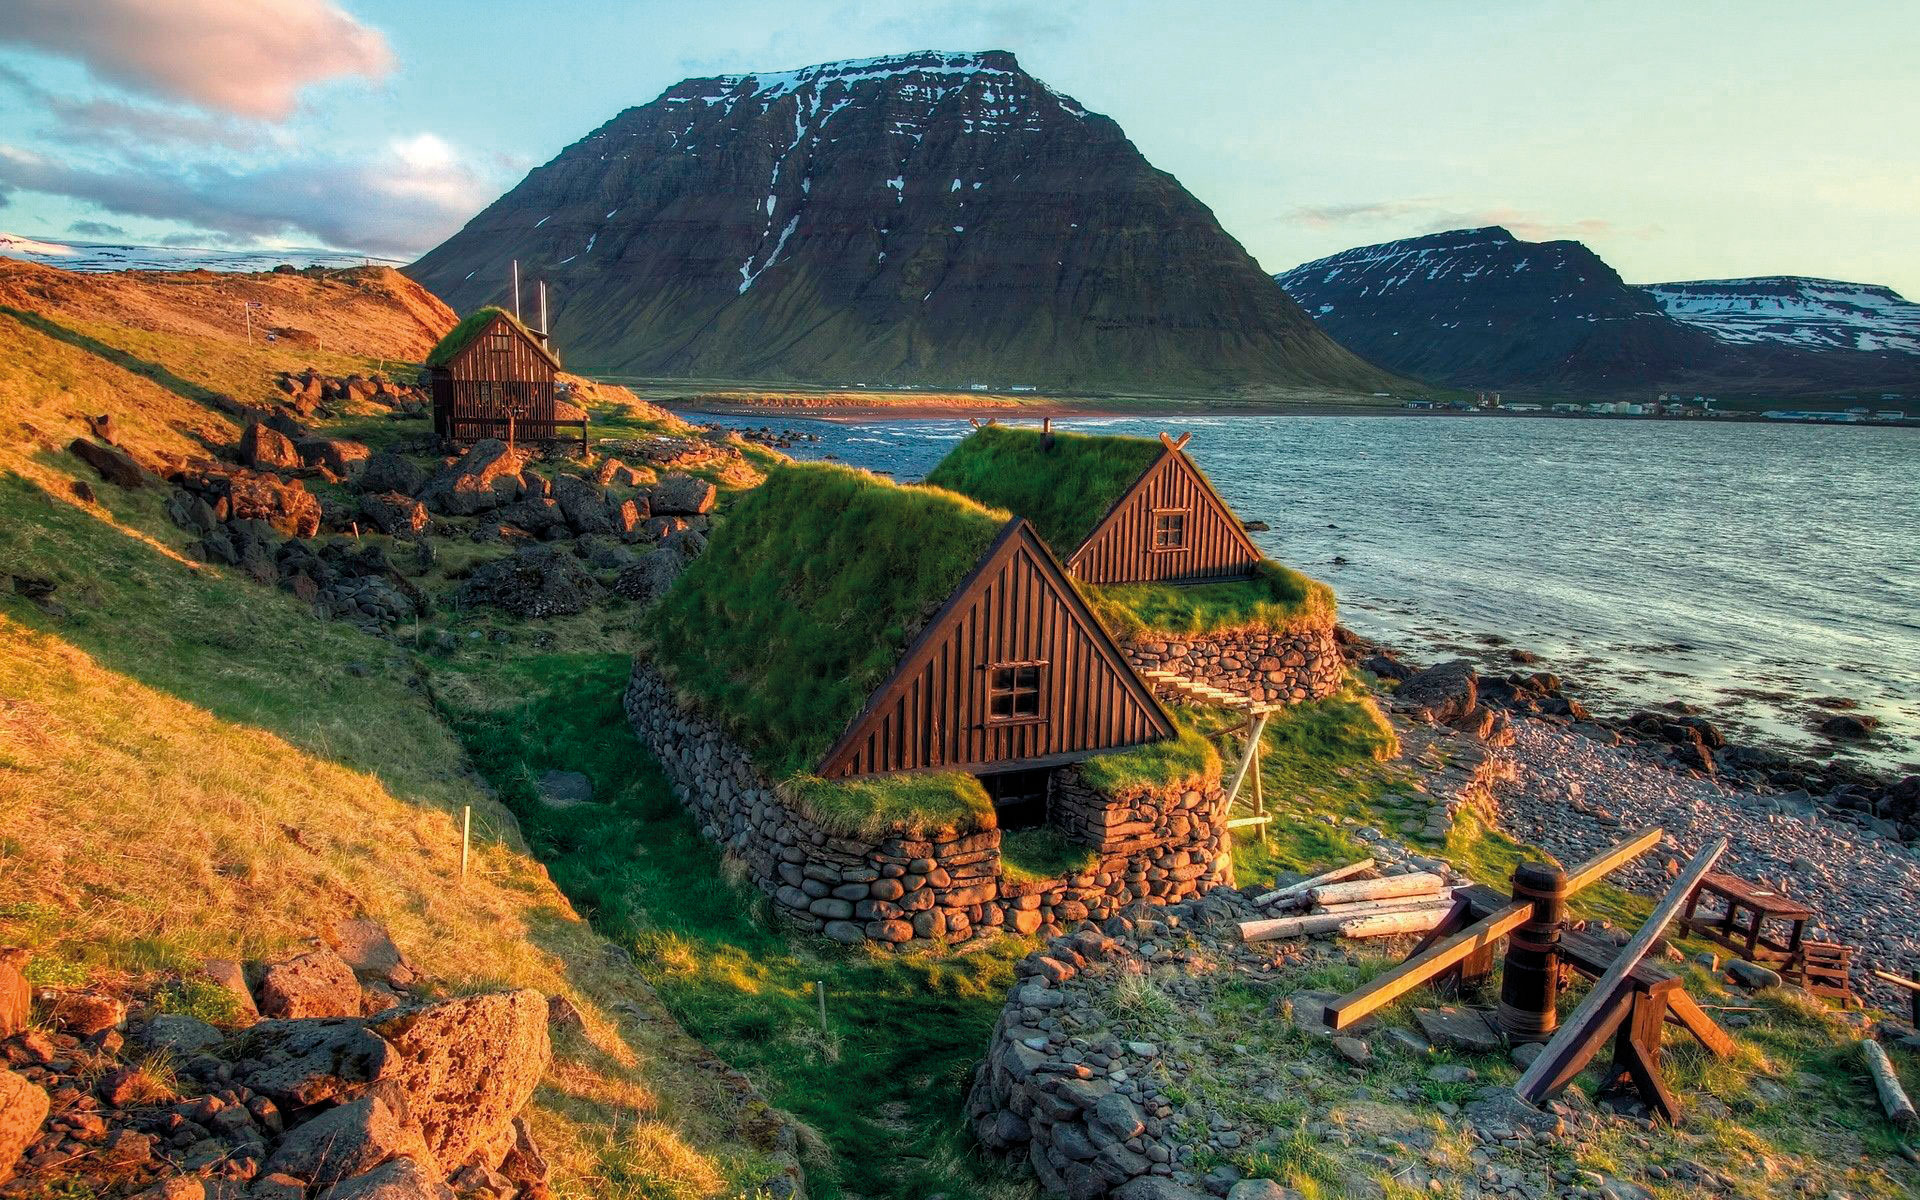  Ισλανδία  Καλοκαίρι 2020  . Ο γύρος του νησιού από τους ειδικούς σε 11 ημέρες! 